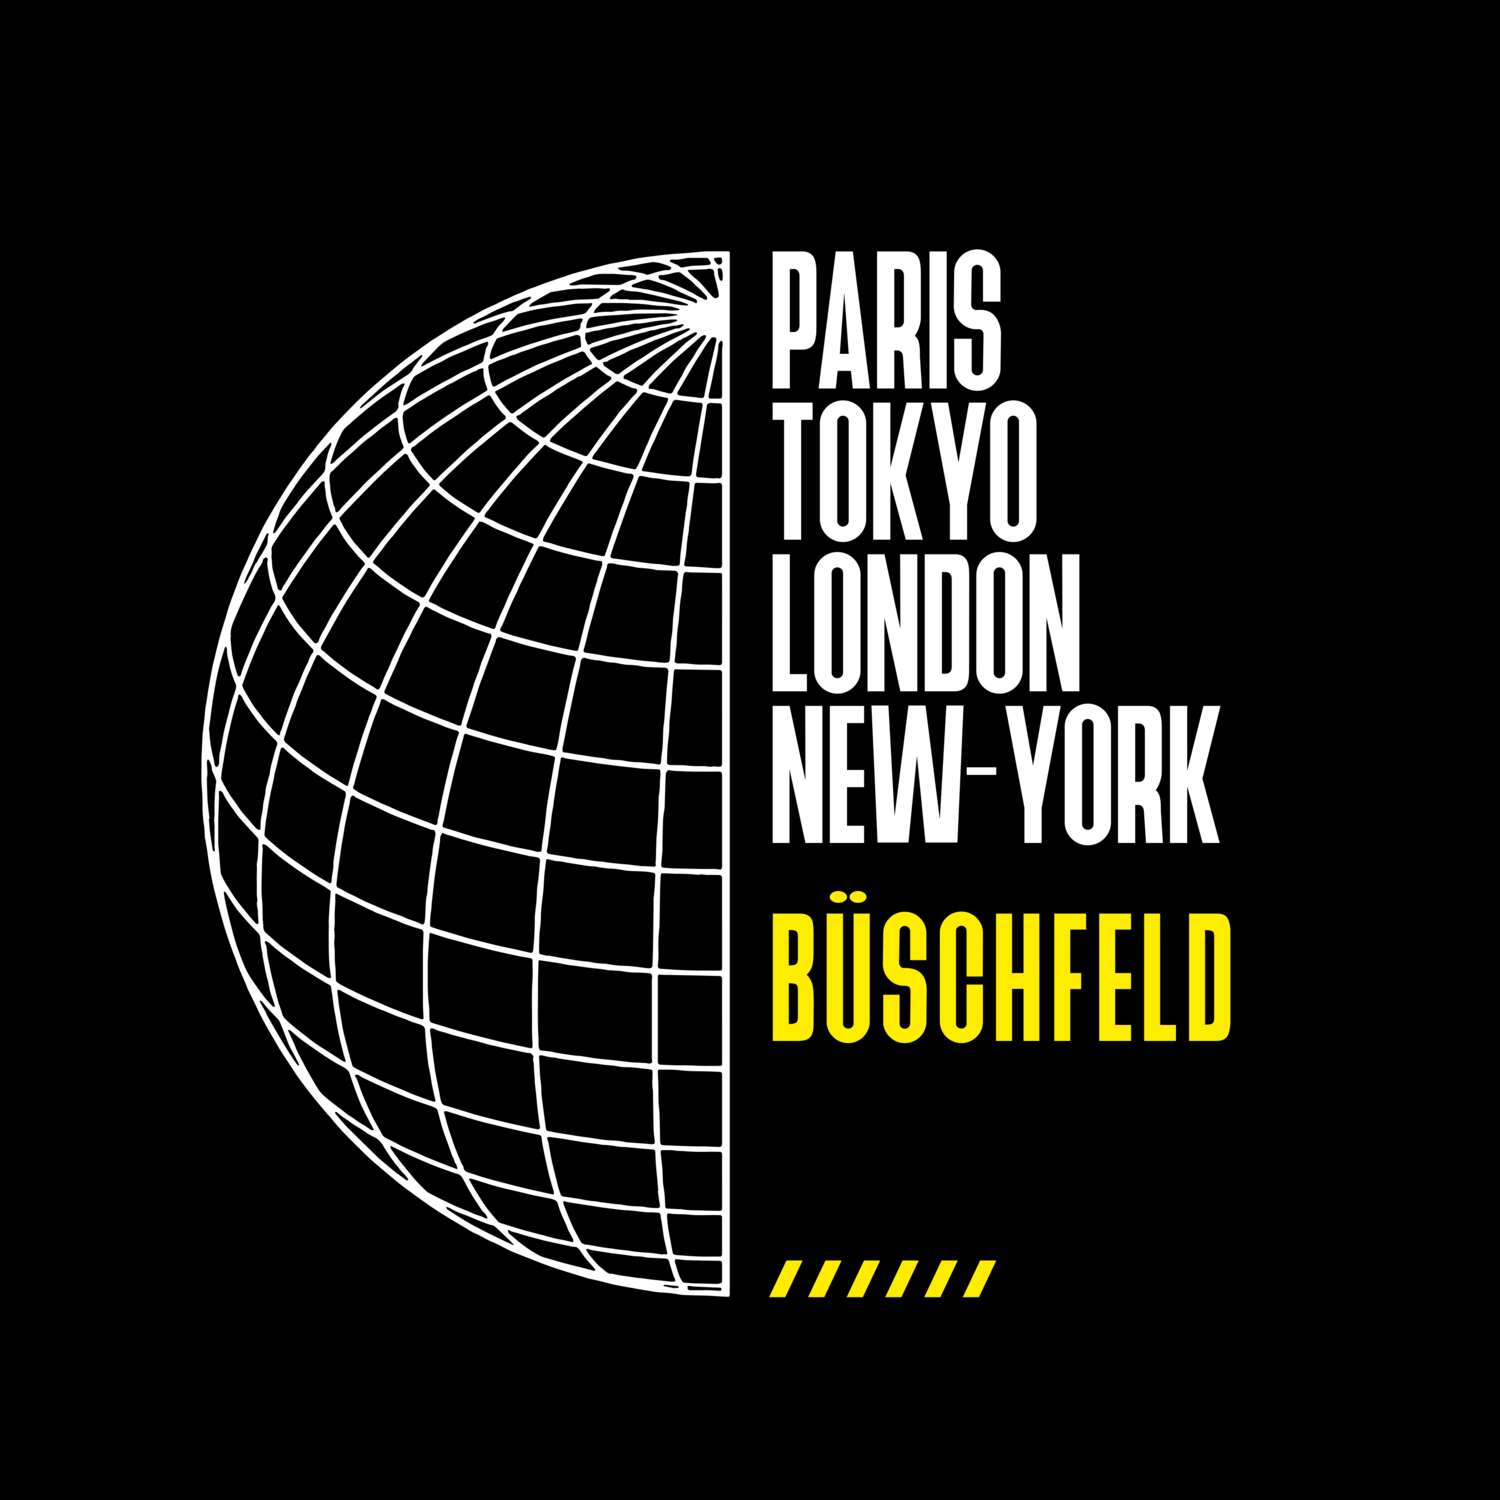 Büschfeld T-Shirt »Paris Tokyo London«